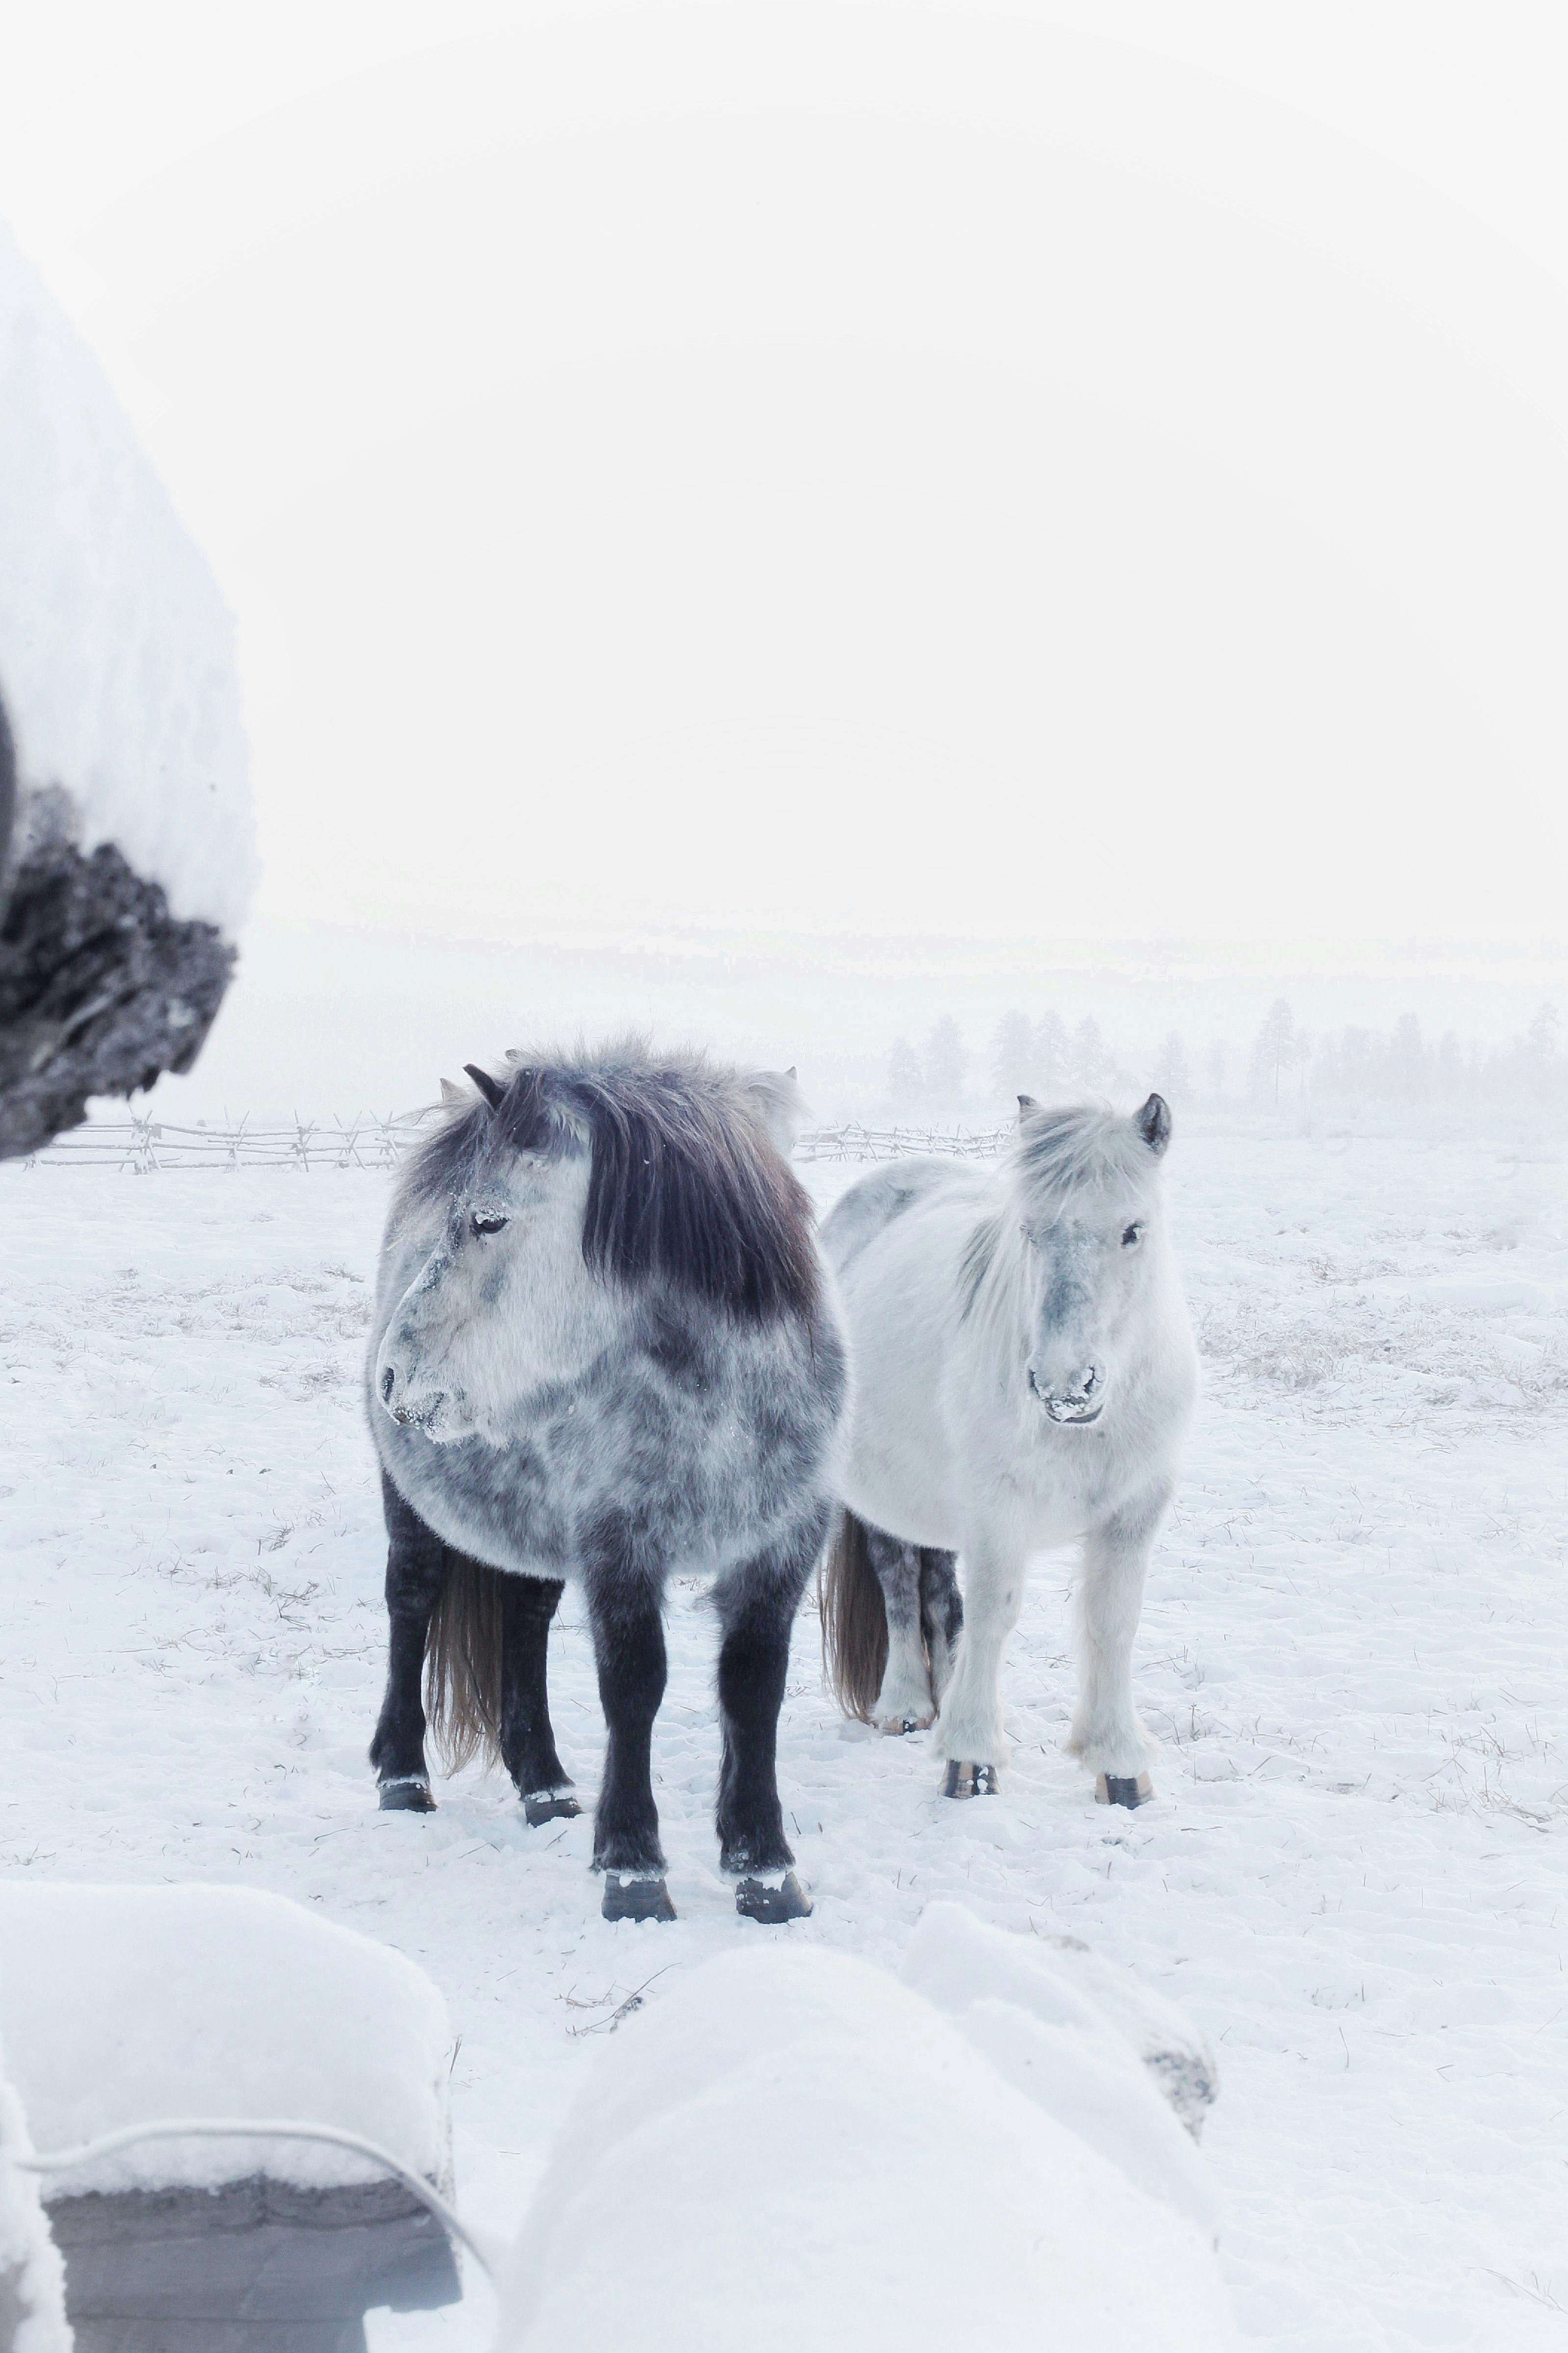 Ilmainen kuvapankkikuva aiheesta eläin, eläinten teemoja, hevonen, kauneus,  lumi, luonto, puhelimen taustakuva, pystysuuntainen laukaus,  shetlanninponit, talvi